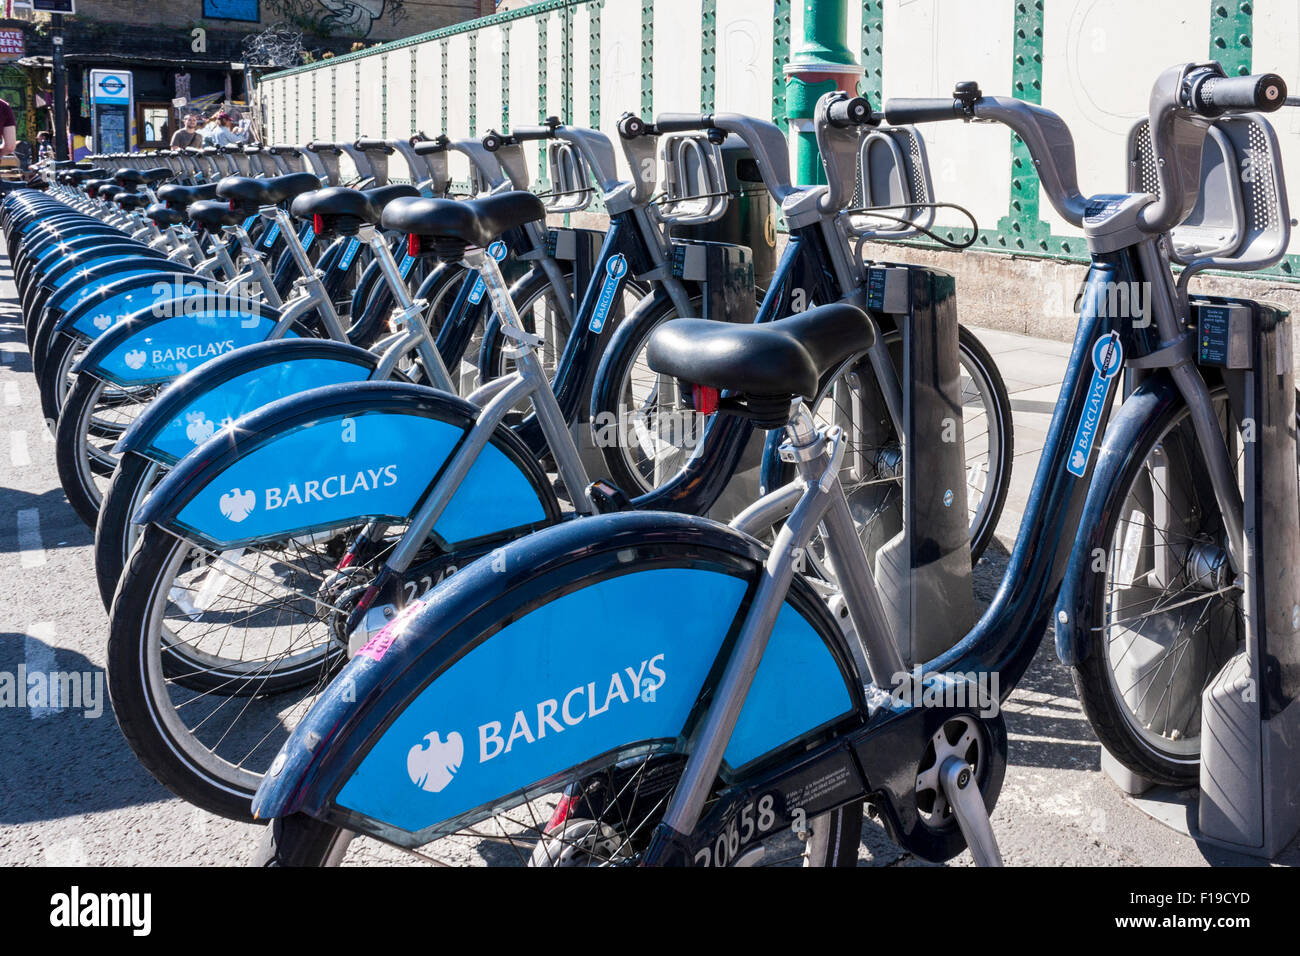 Une rangée de Barclay's louer des vélos de marque. Banque D'Images